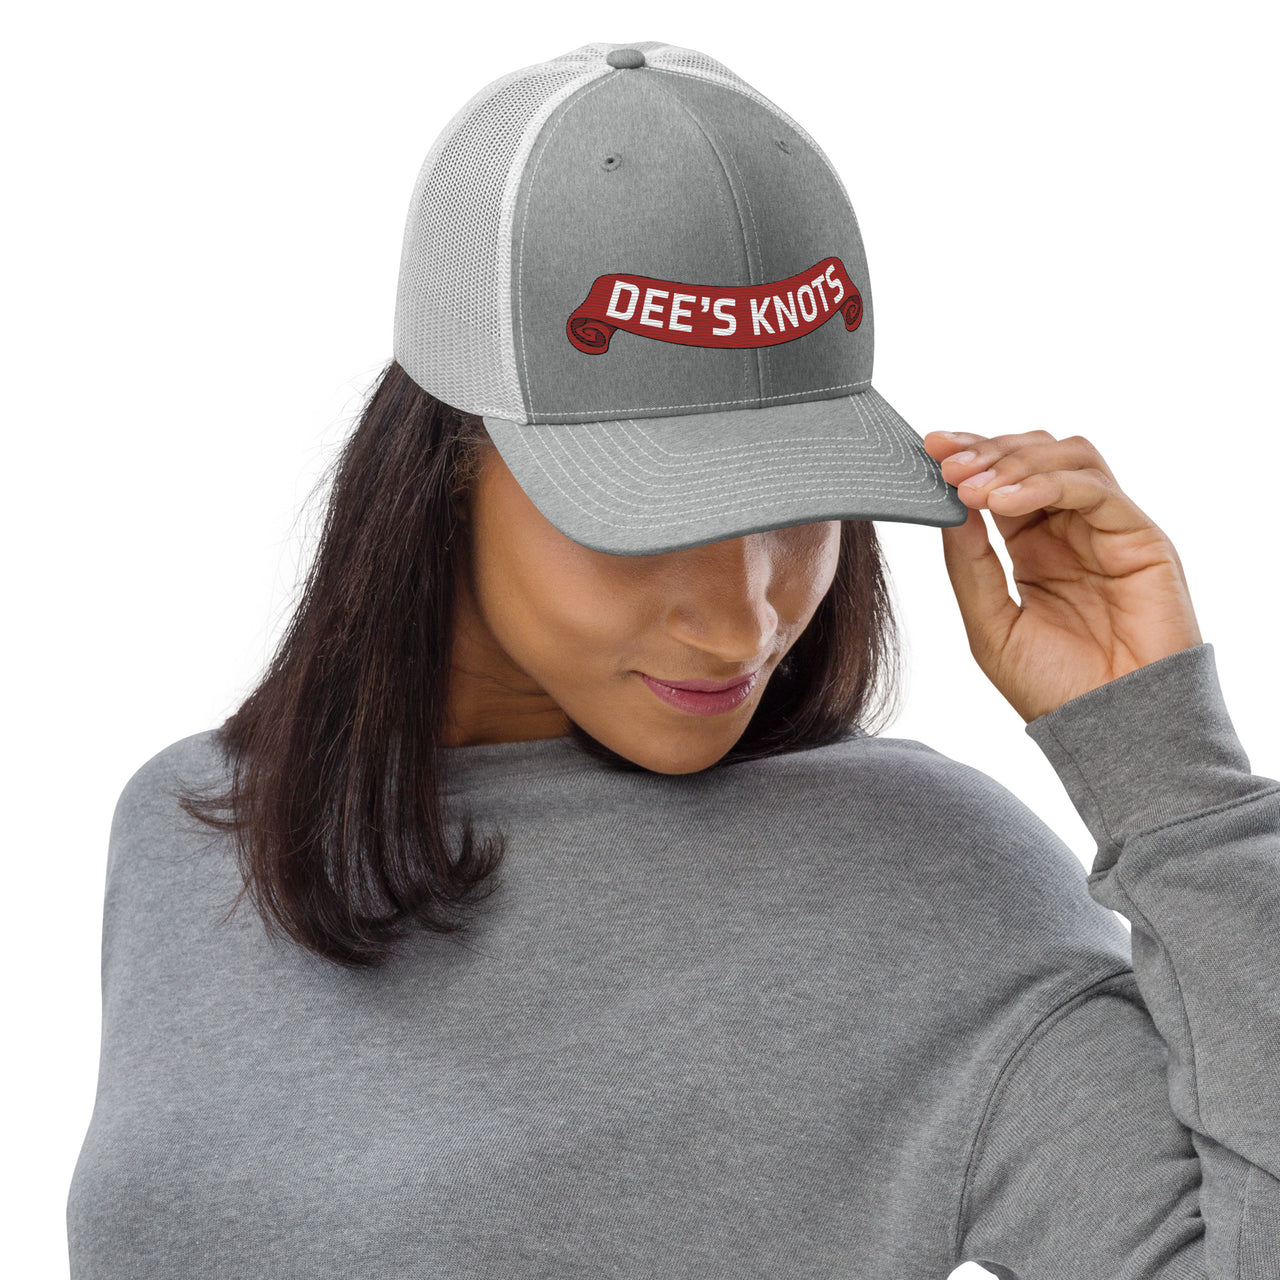 Dee's Knots- Trucker Hat